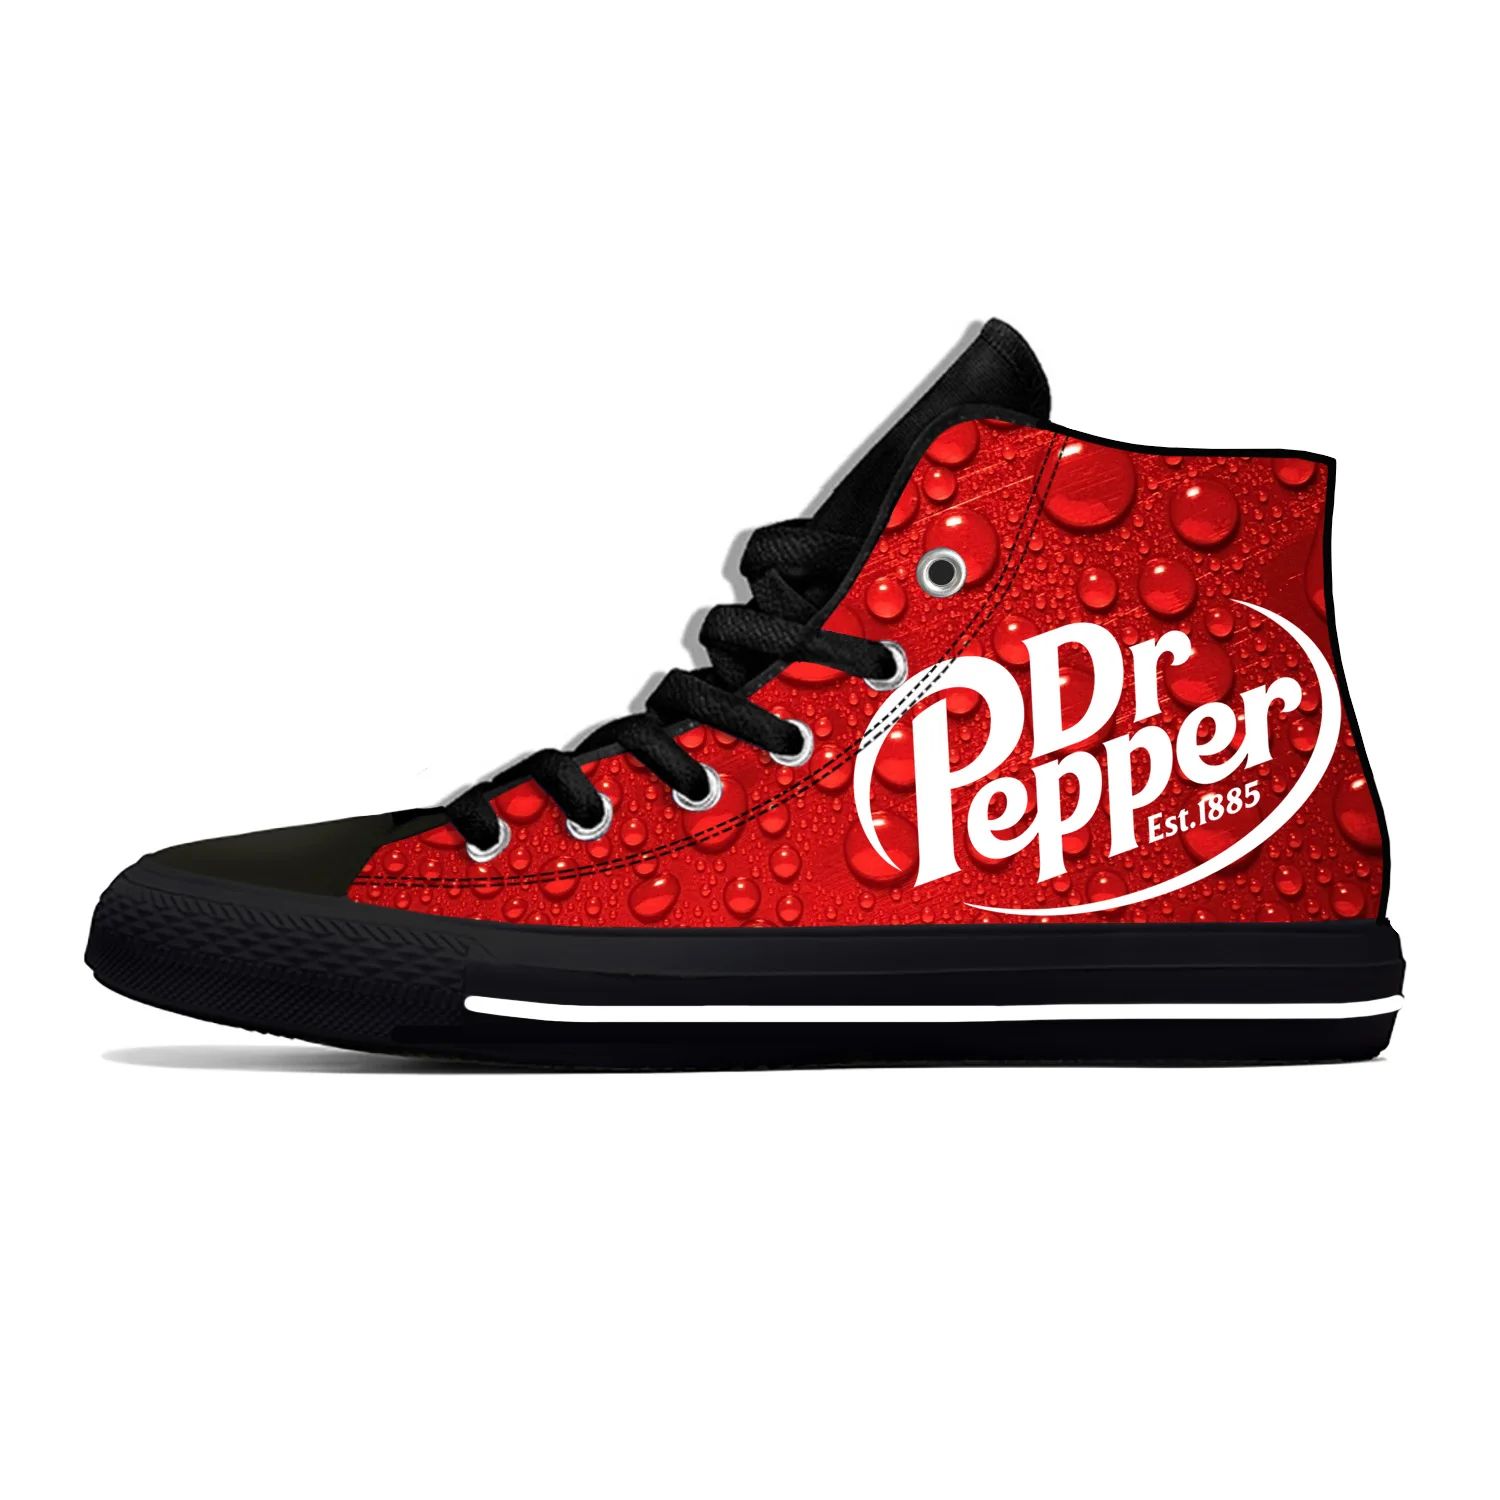 Color:DR Pepper BShoe Size:5.5